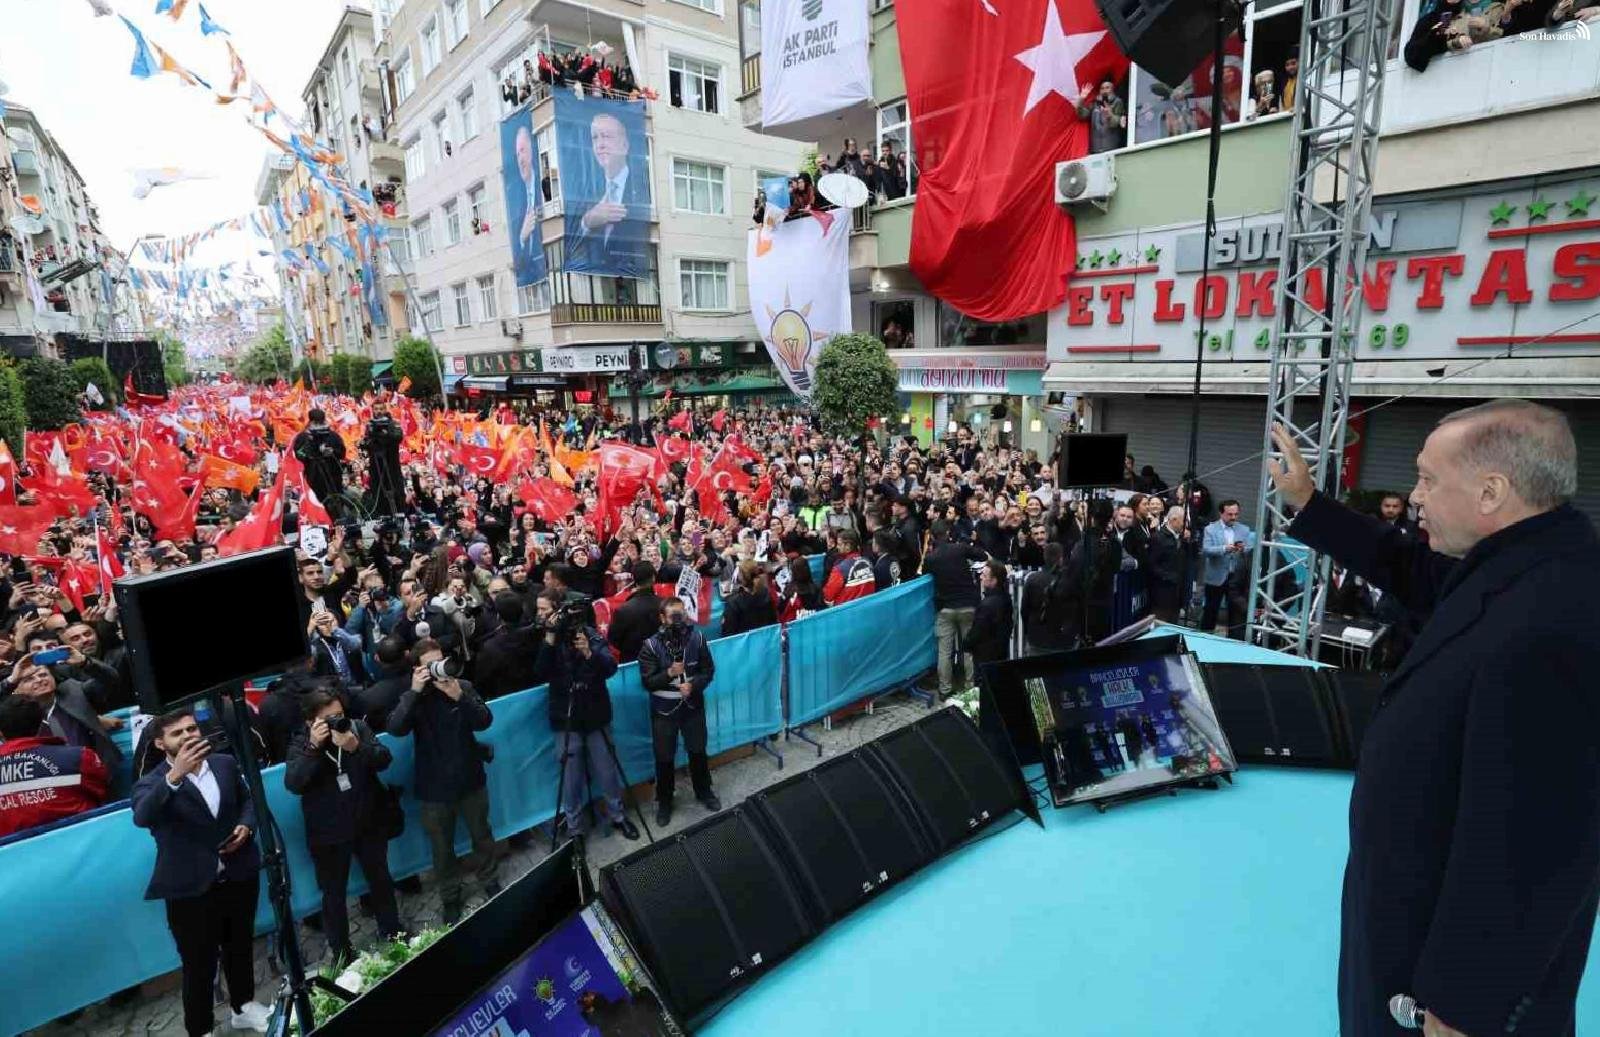 Cumhurbaşkanı Erdoğan: “İstanbul, bu ülkenin yönetimini kasetle ele geçirme operasyonlarına geçit vermemiştir”